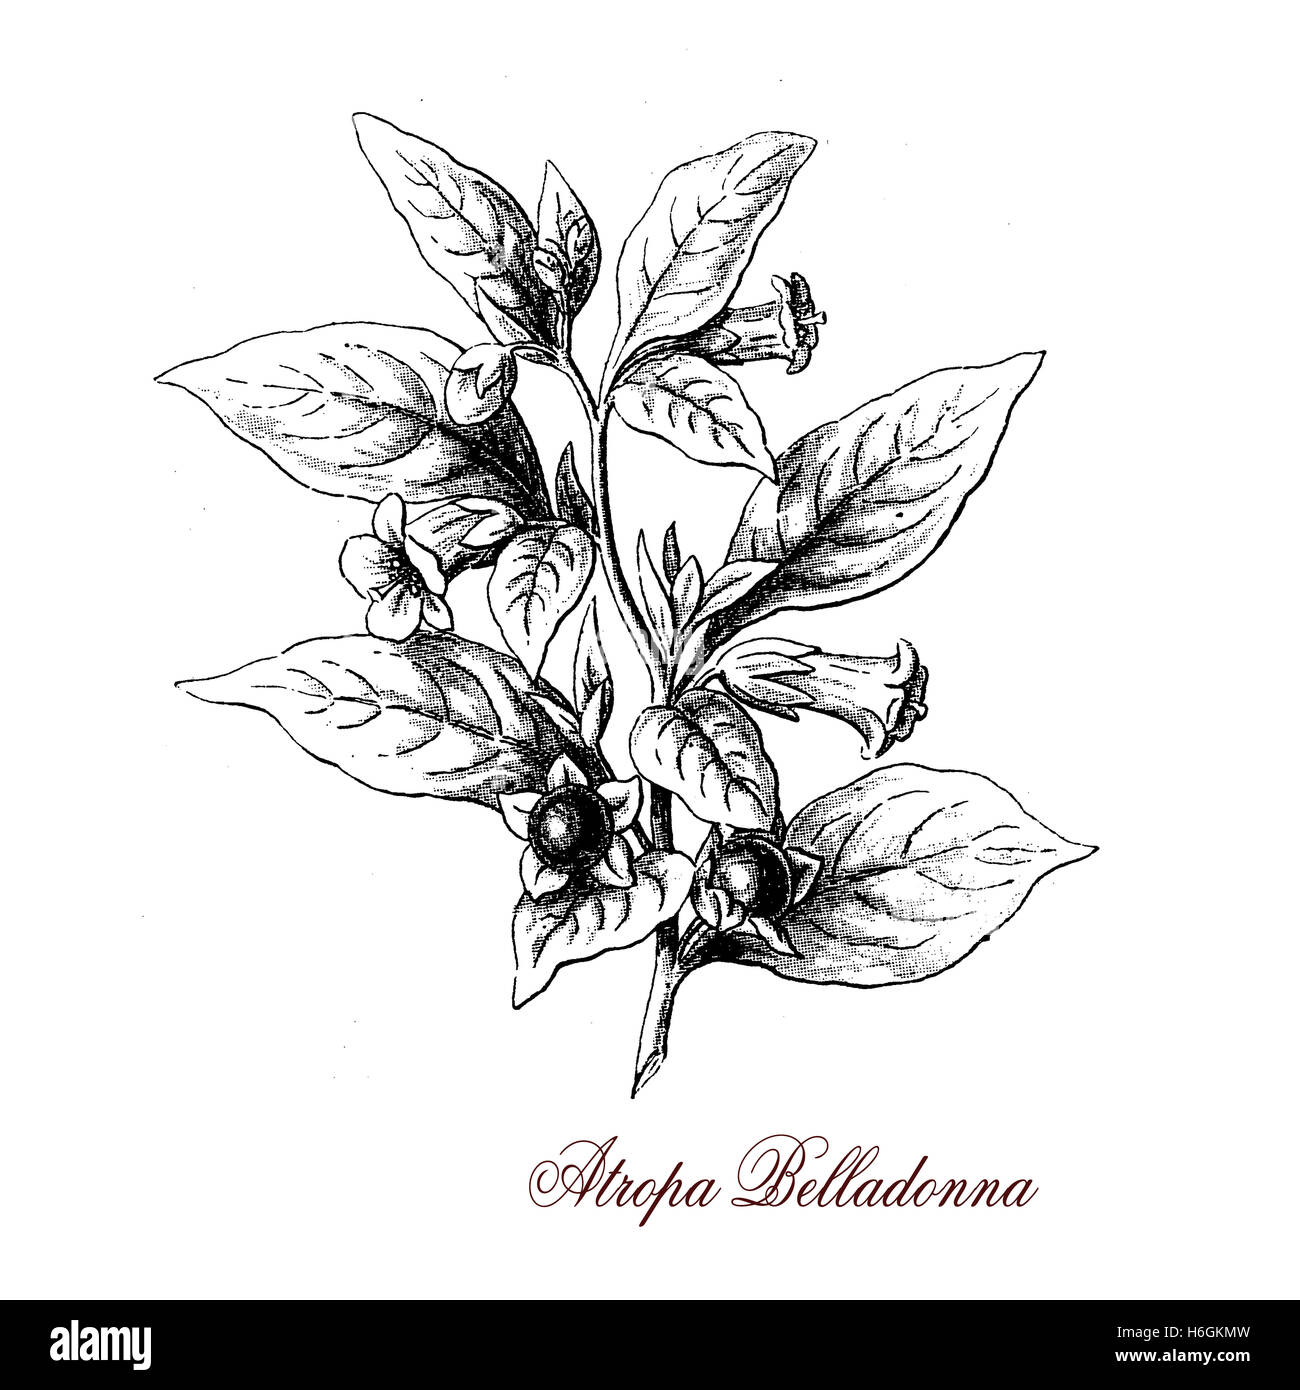 Belladonna o belladonna è una pianta erbacea ampiamente distribuiti. Foglie e bacche sono estremamente tossici. in passato è stato utilizzato come medicina, di cosmetici e di veleno. Foto Stock